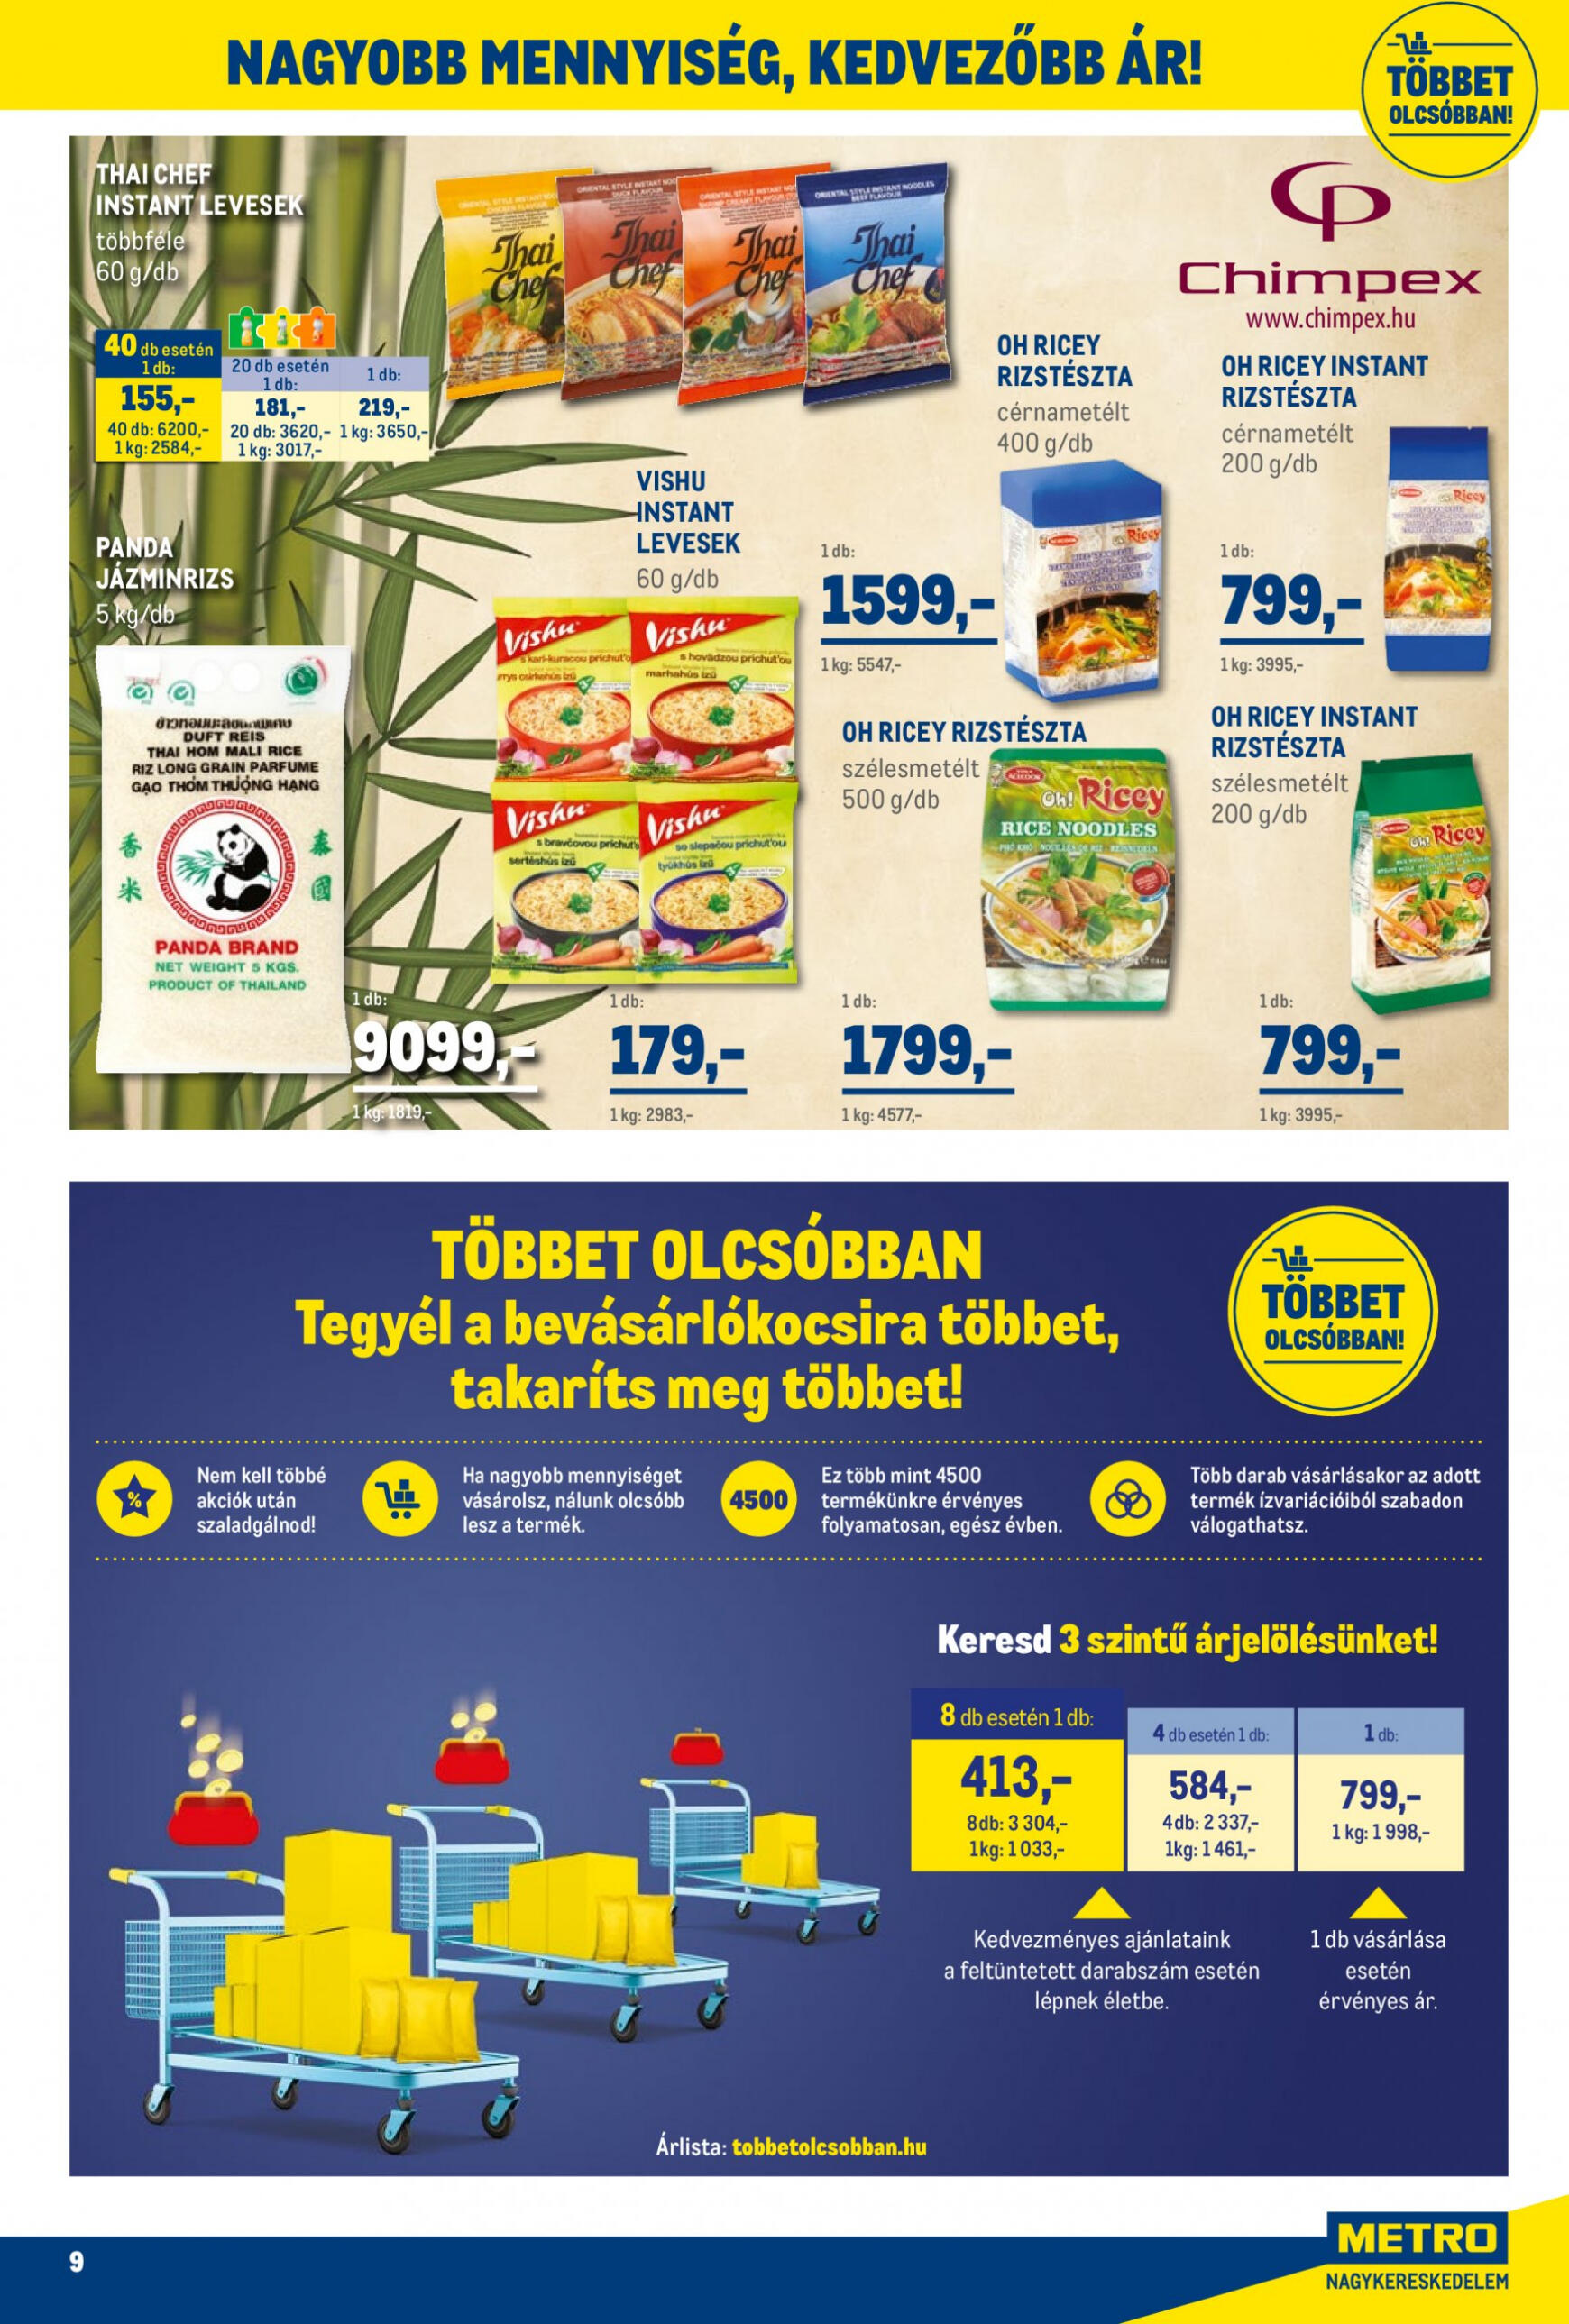 metro - Aktuális újság Metro - Élelmiszer és Szezonális Ajánlataink Kiskereskedőknek 05.02. - 05.31. - page: 9